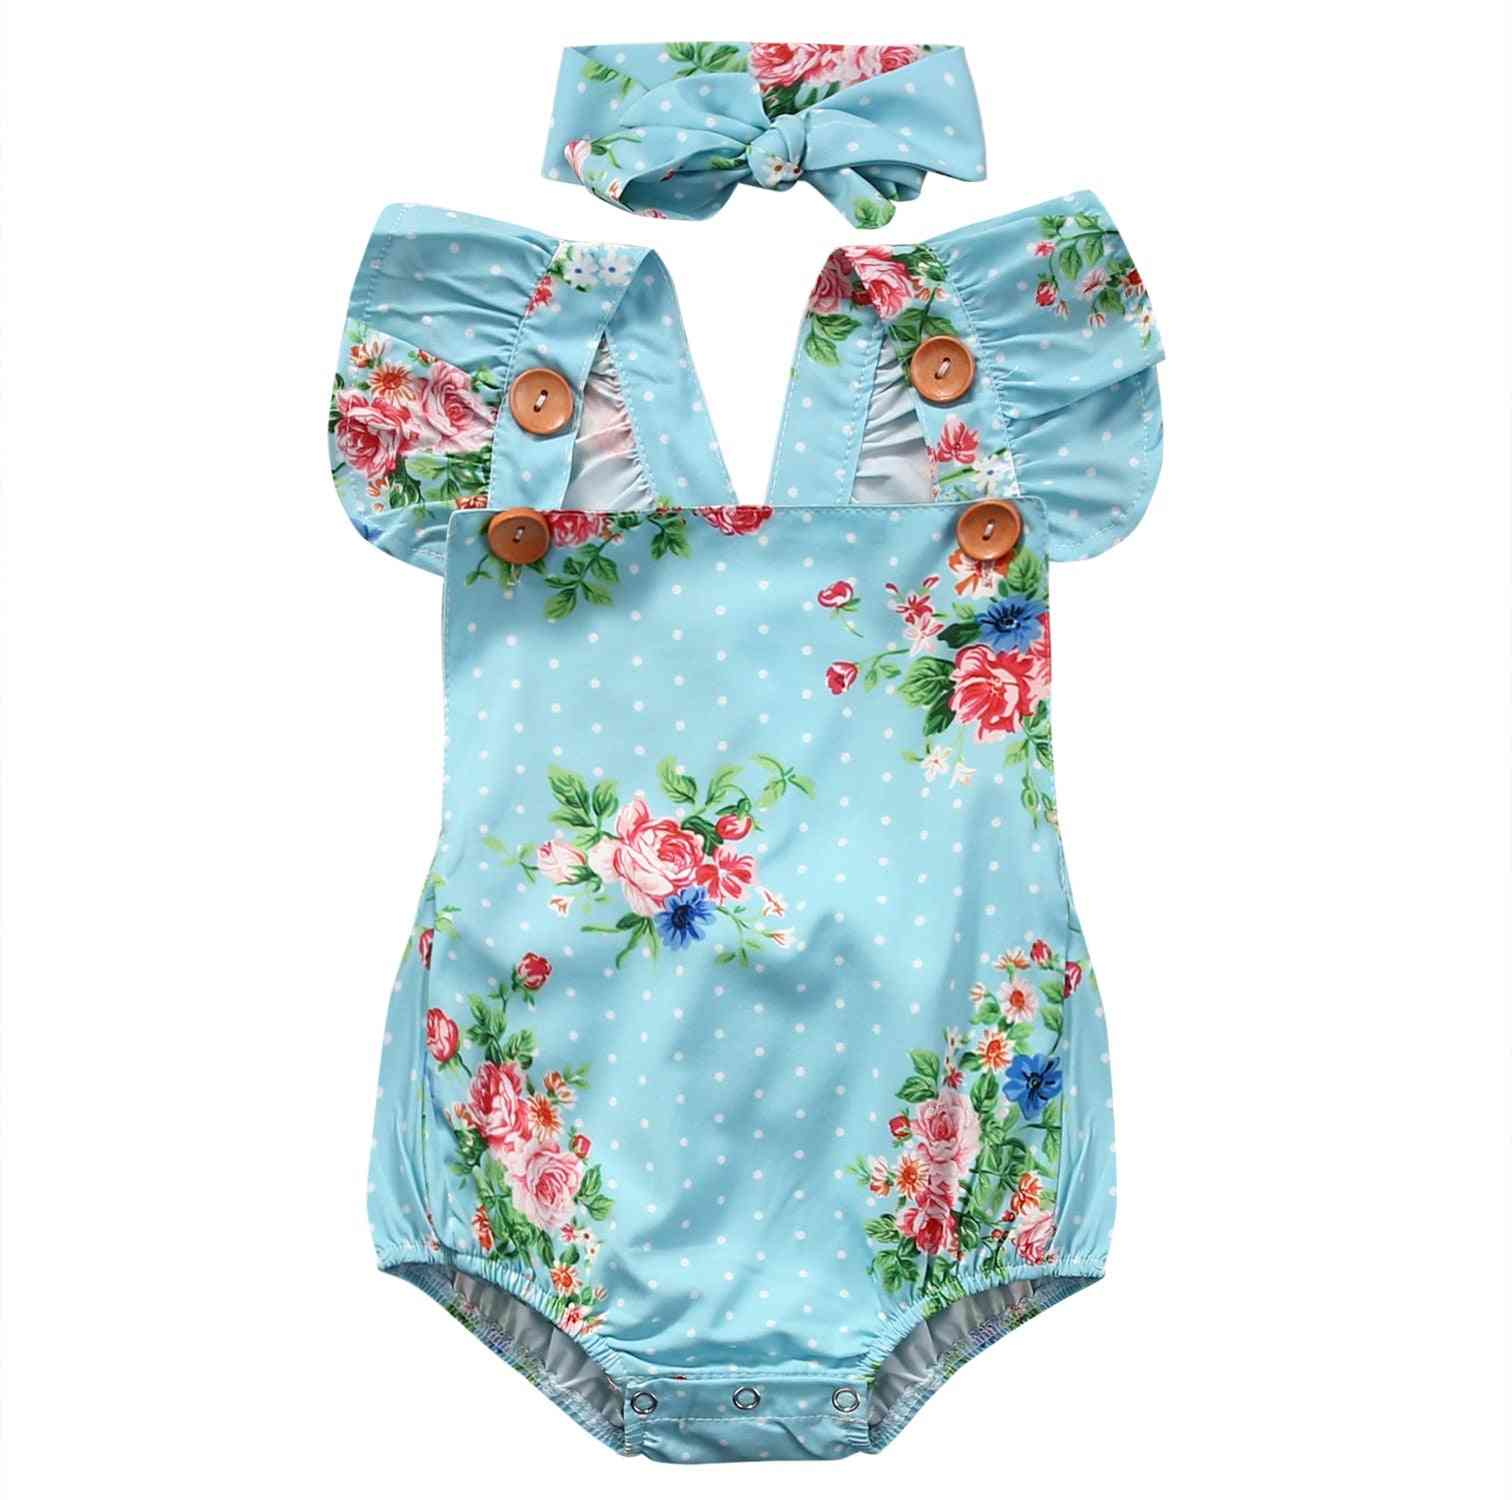 Mignon barboteuse florale bébé filles combinaison barboteuse + bandeau tenues nouveau-né ensemble